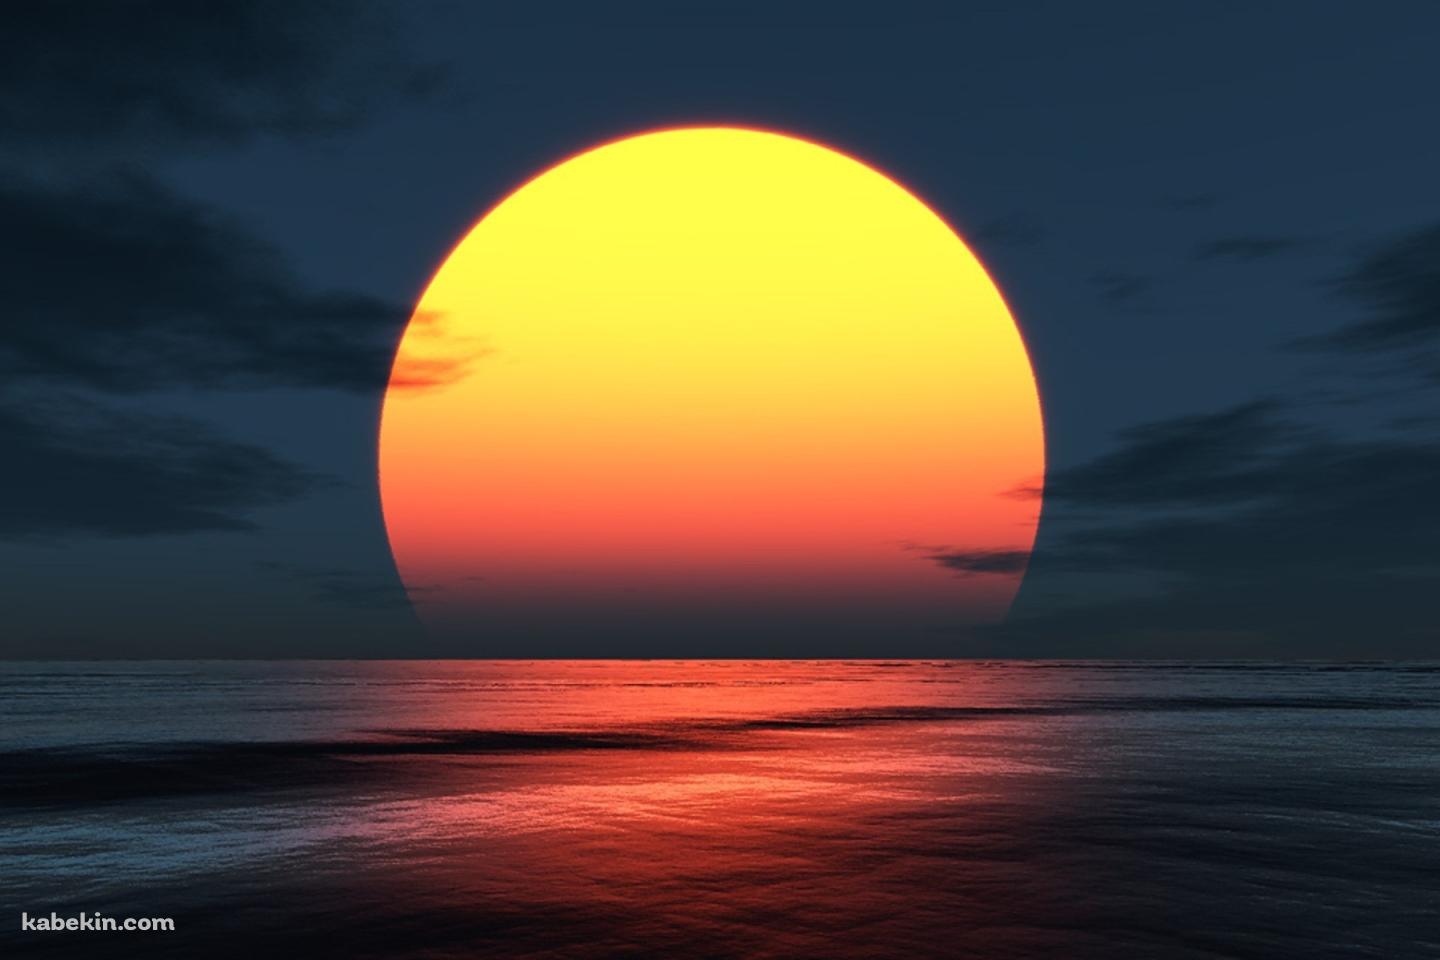 浜辺から見る夕日の壁紙(1440px x 960px) 高画質 PC・デスクトップ用